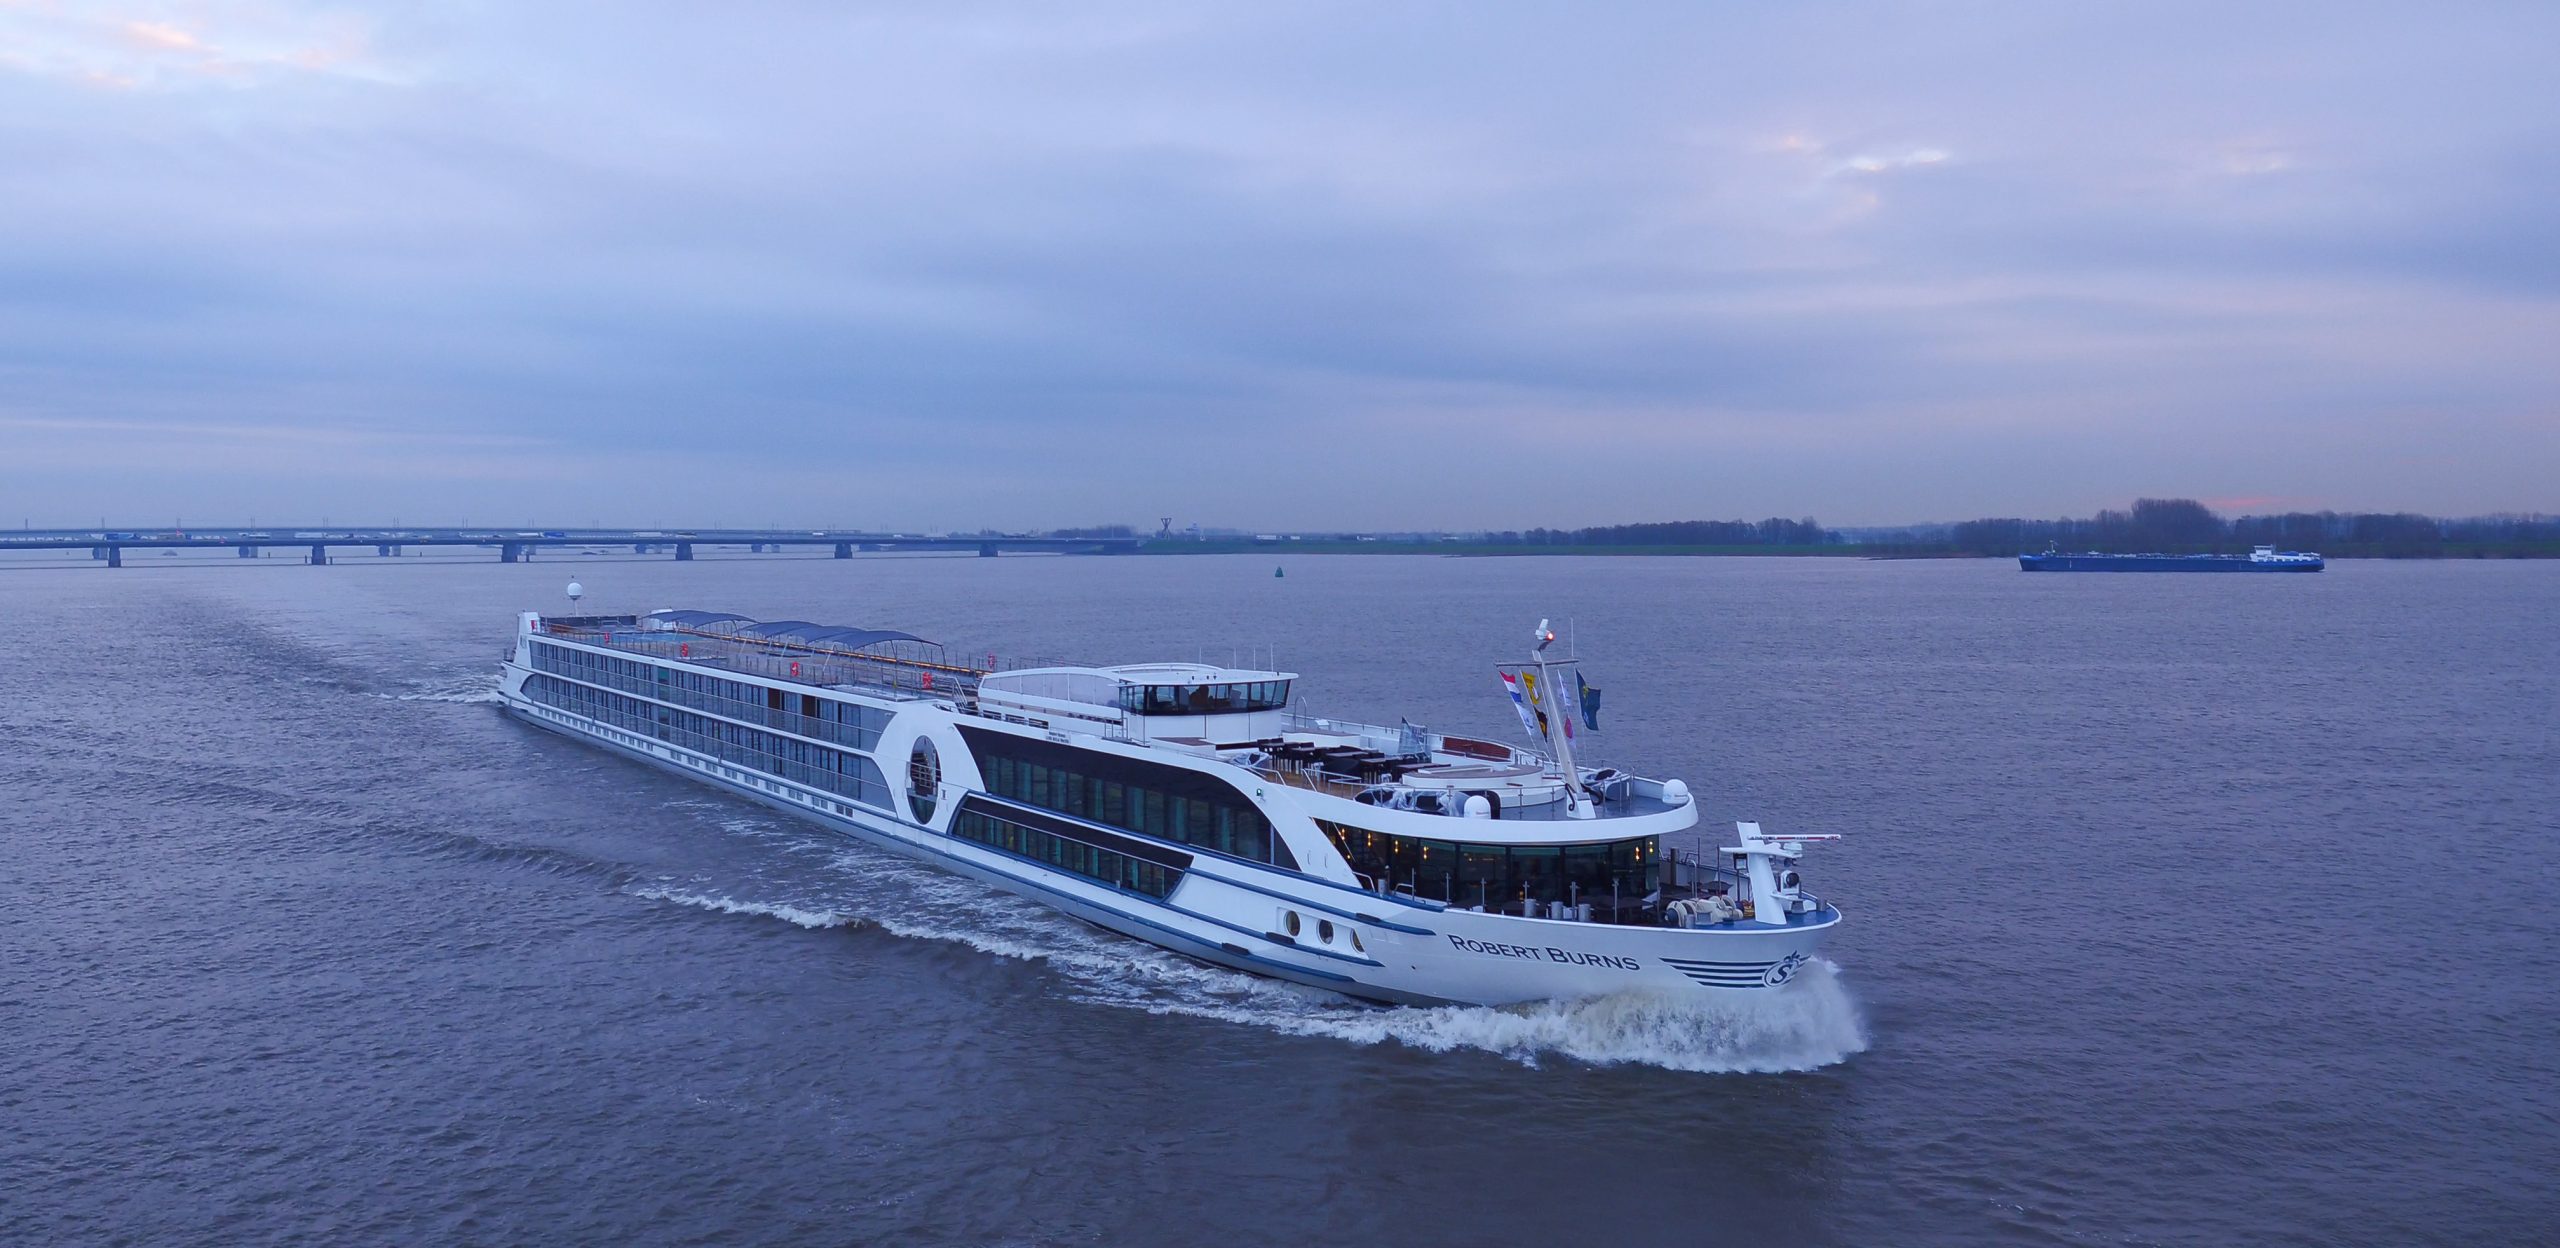 Flussreiseveranstalter Viva Cruises wird seine Flotte um drei Schiffe erweitern: die Treasures, die Inspire sowie die Robert Burns von Scylla